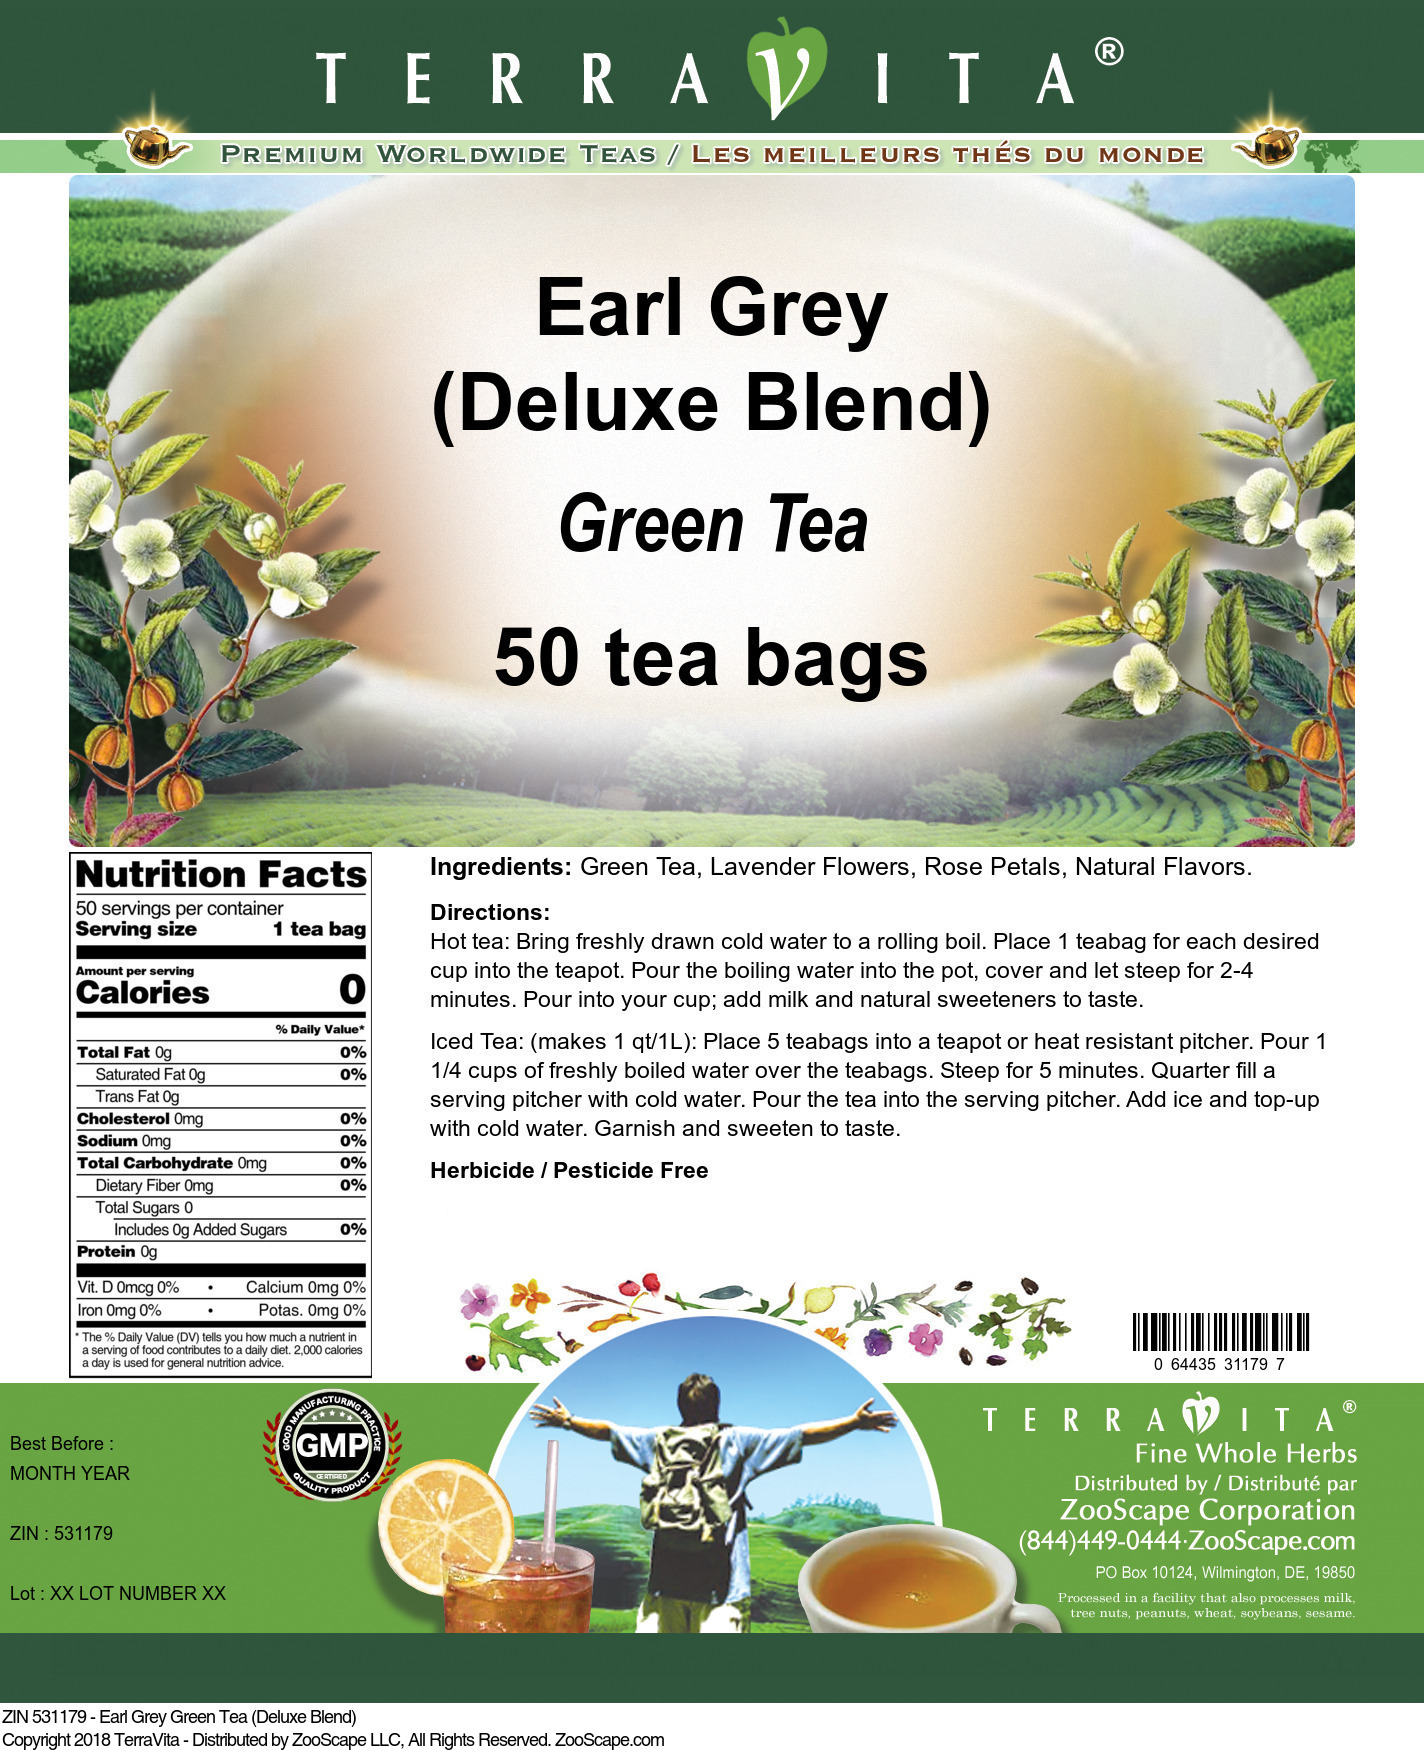 Earl Grey Green Tea (Deluxe Blend) - Label